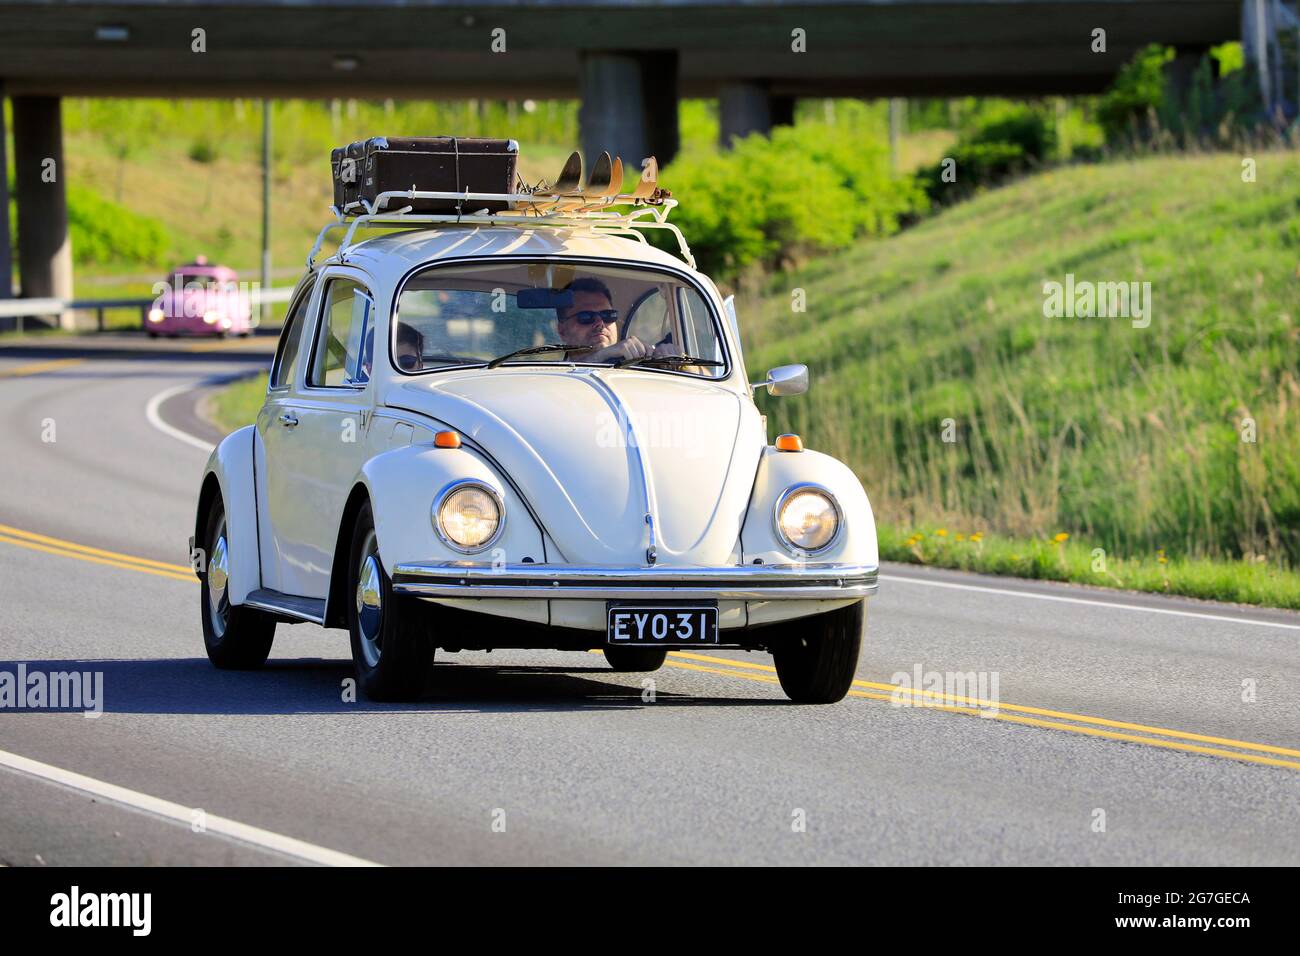 Volkswagen Beetle biancastro, ufficialmente Volkswagen tipo 1, a velocità con bagaglio e due paia di sci sul portapacchi. Salo, Finlandia. 18 maggio 2019. Foto Stock